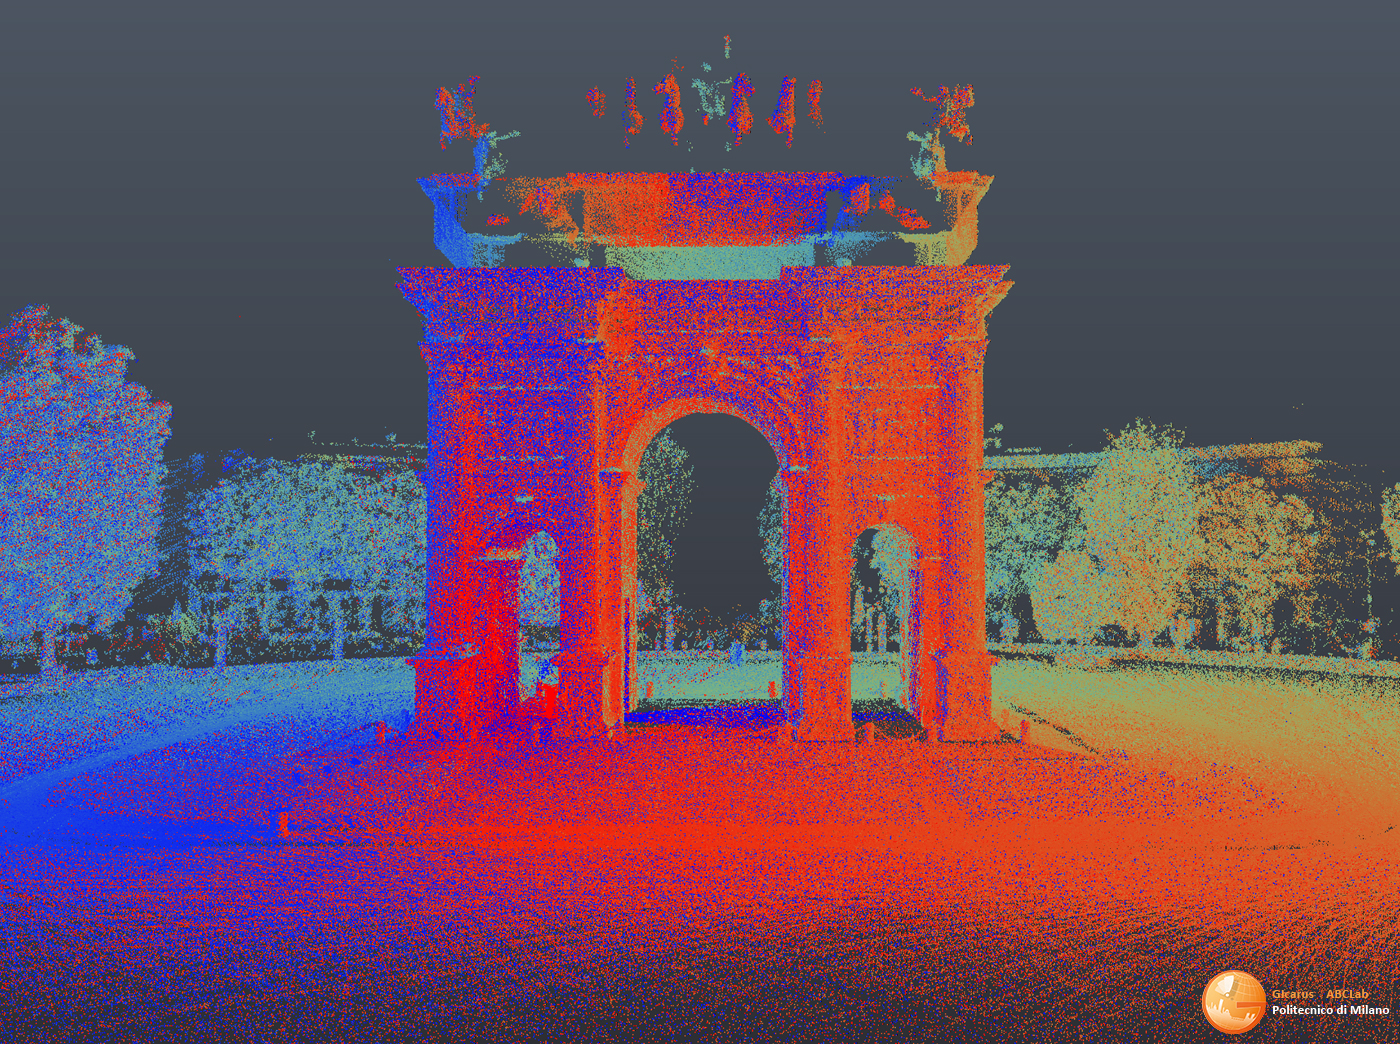 L'Arco della Pace di Milano e la sua memoria storica – il processo Scan-to-BIM-to-XR